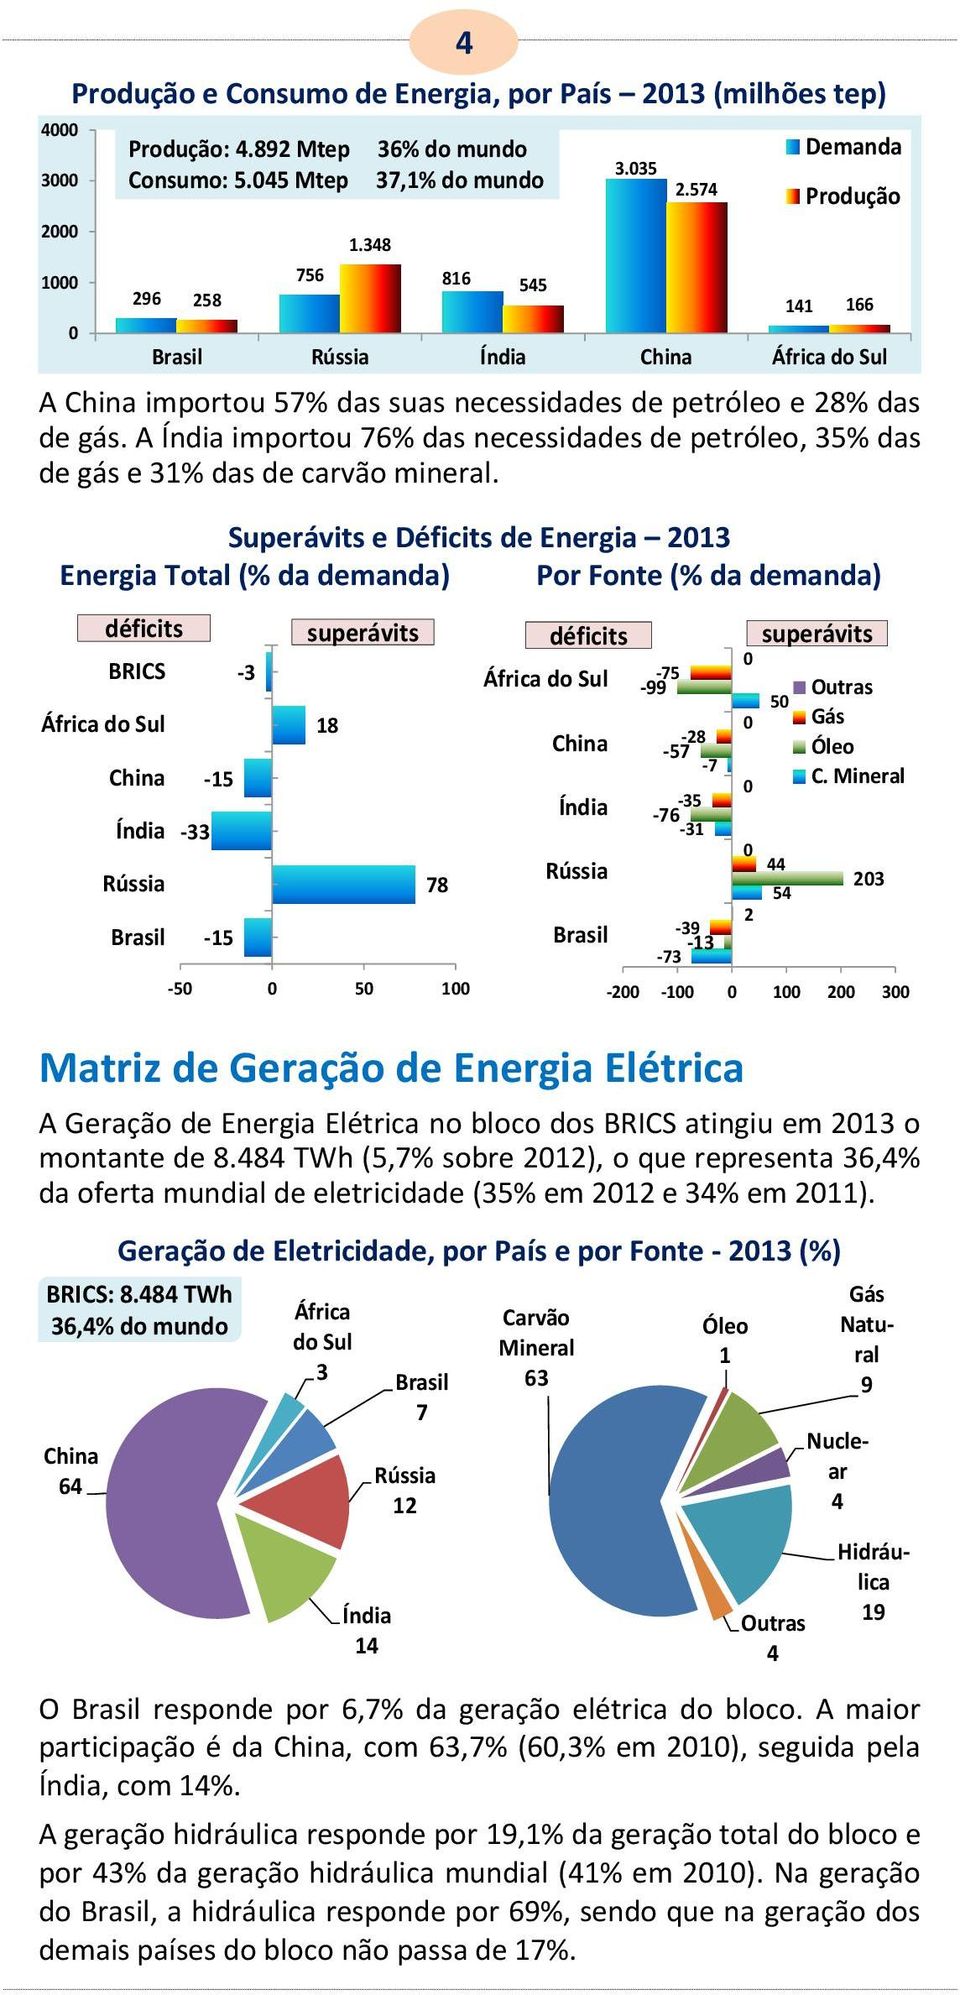 Superávits e Déficits Energia 1 Energia Total (% da manda) Por Fonte (% da manda) Matriz Geração Energia Elétrica A Geração Energia Elétrica no bloco dos BRICS atingiu em 1 o montante 8.